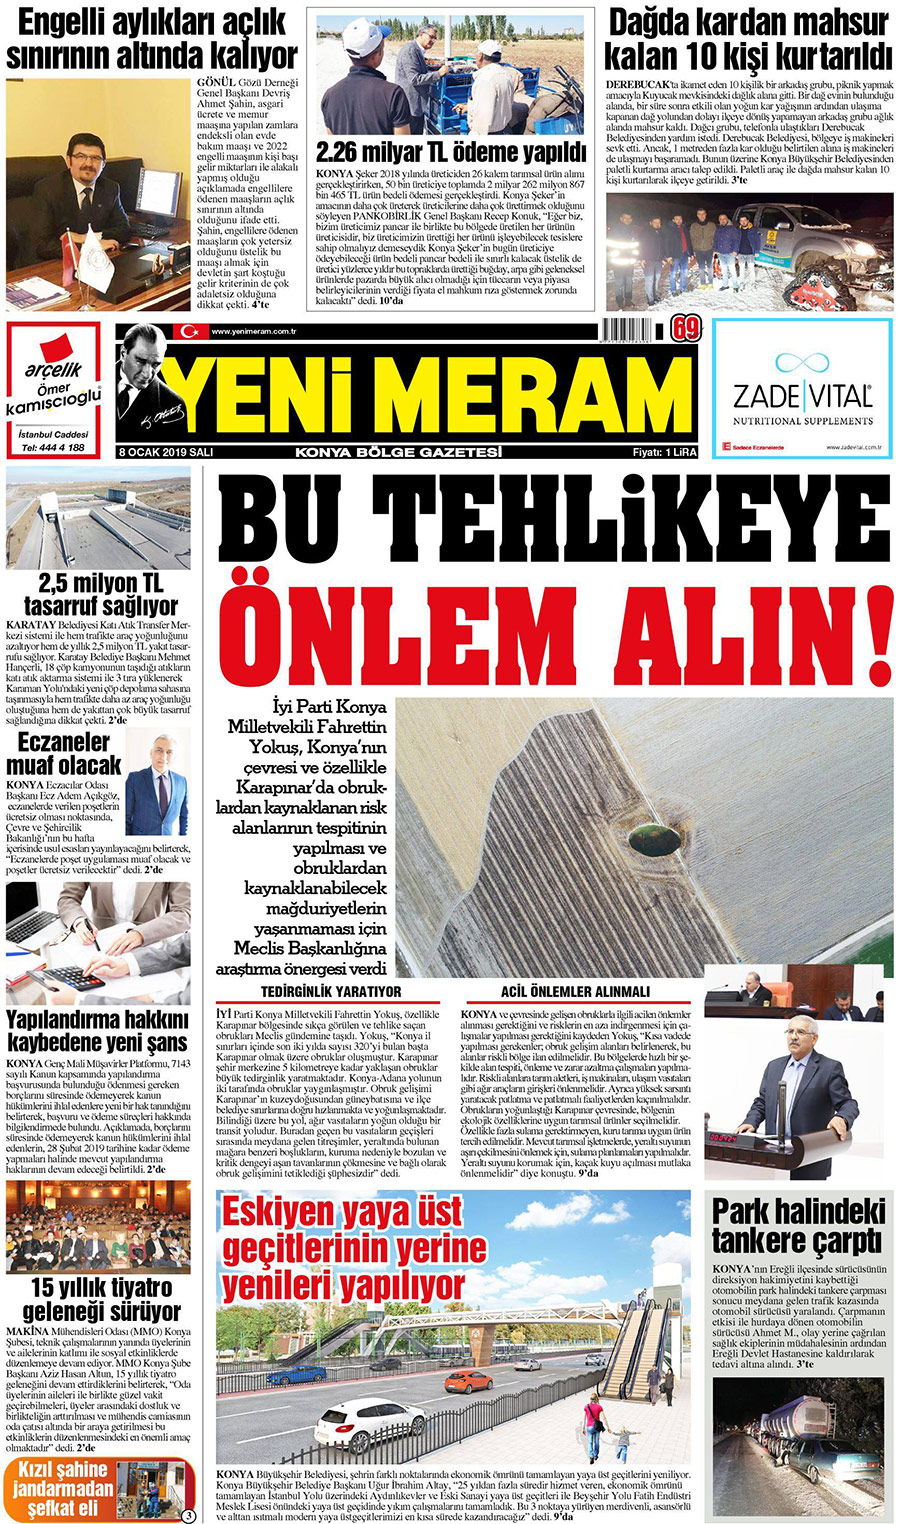 8 Ocak 2019 Yeni Meram Gazetesi